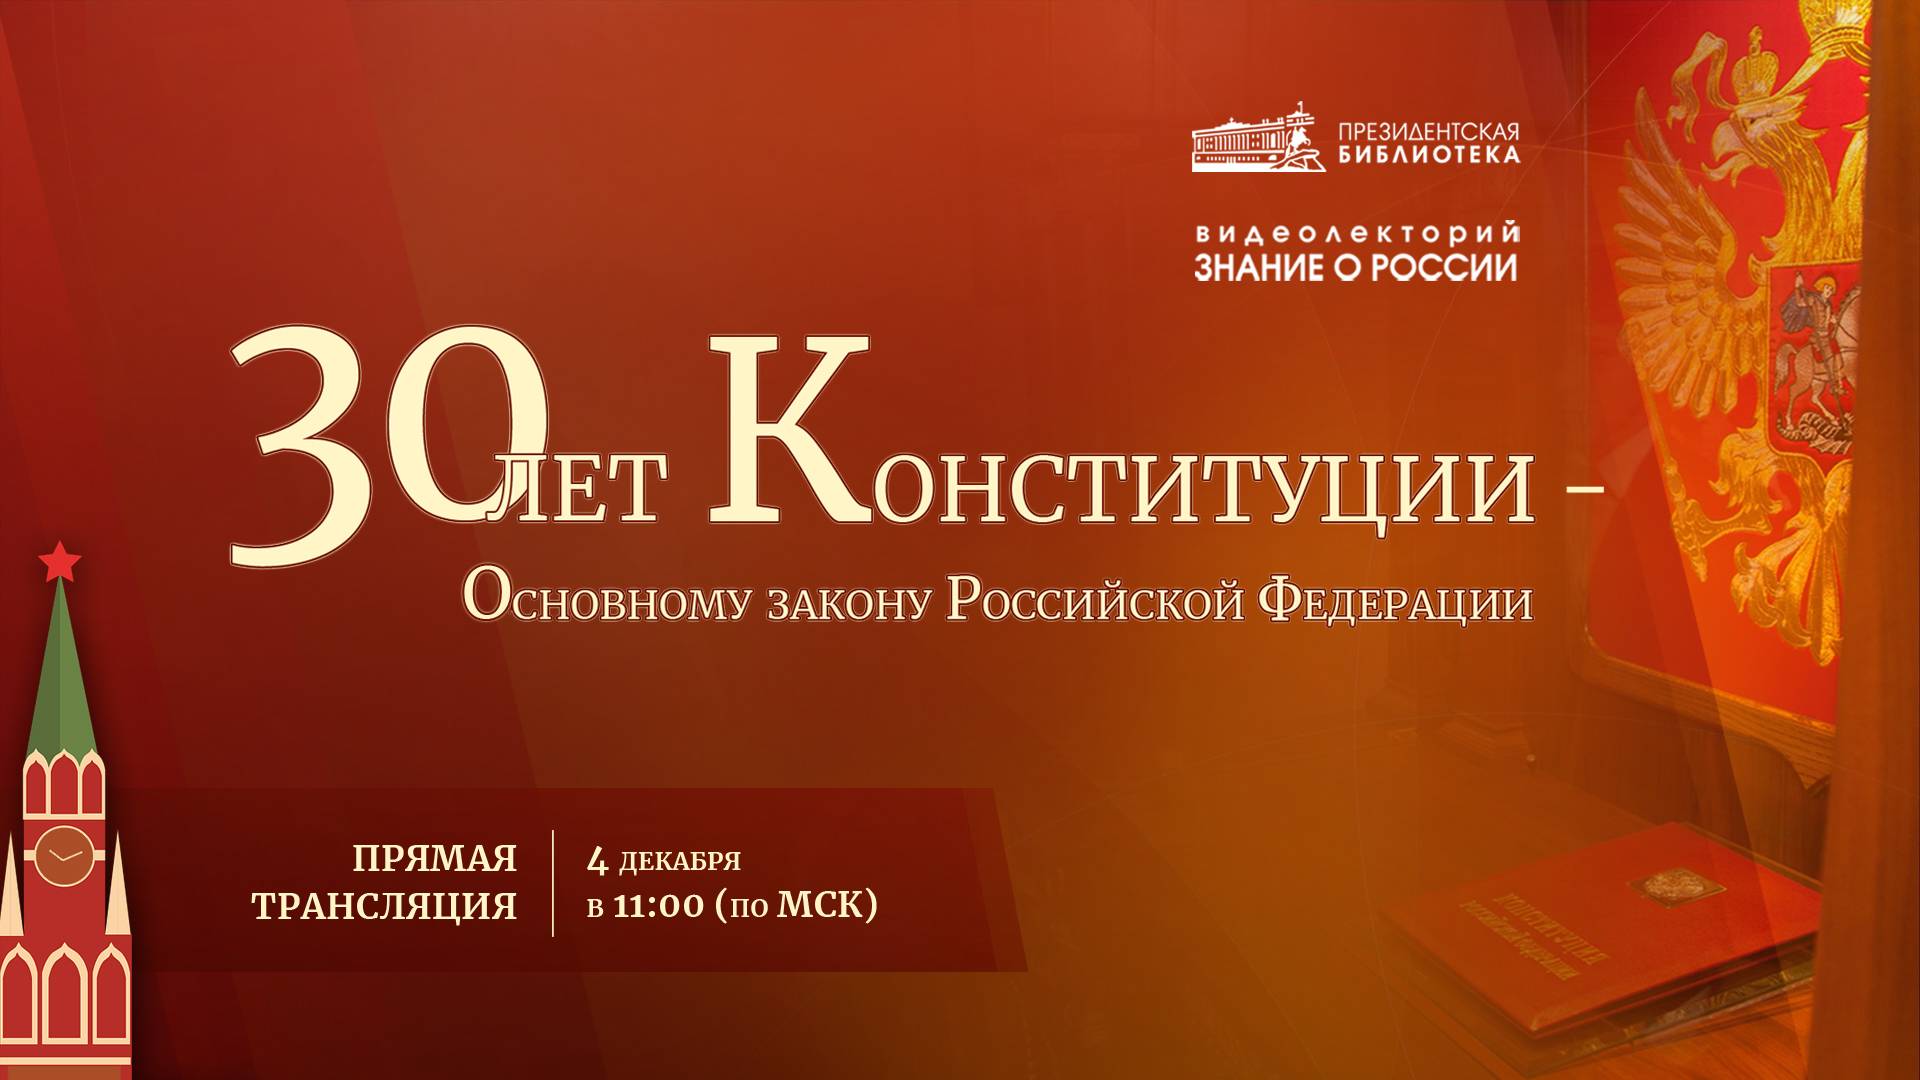 Видеолекция «30 лет Конституции – Основному закону Российской Федерации»